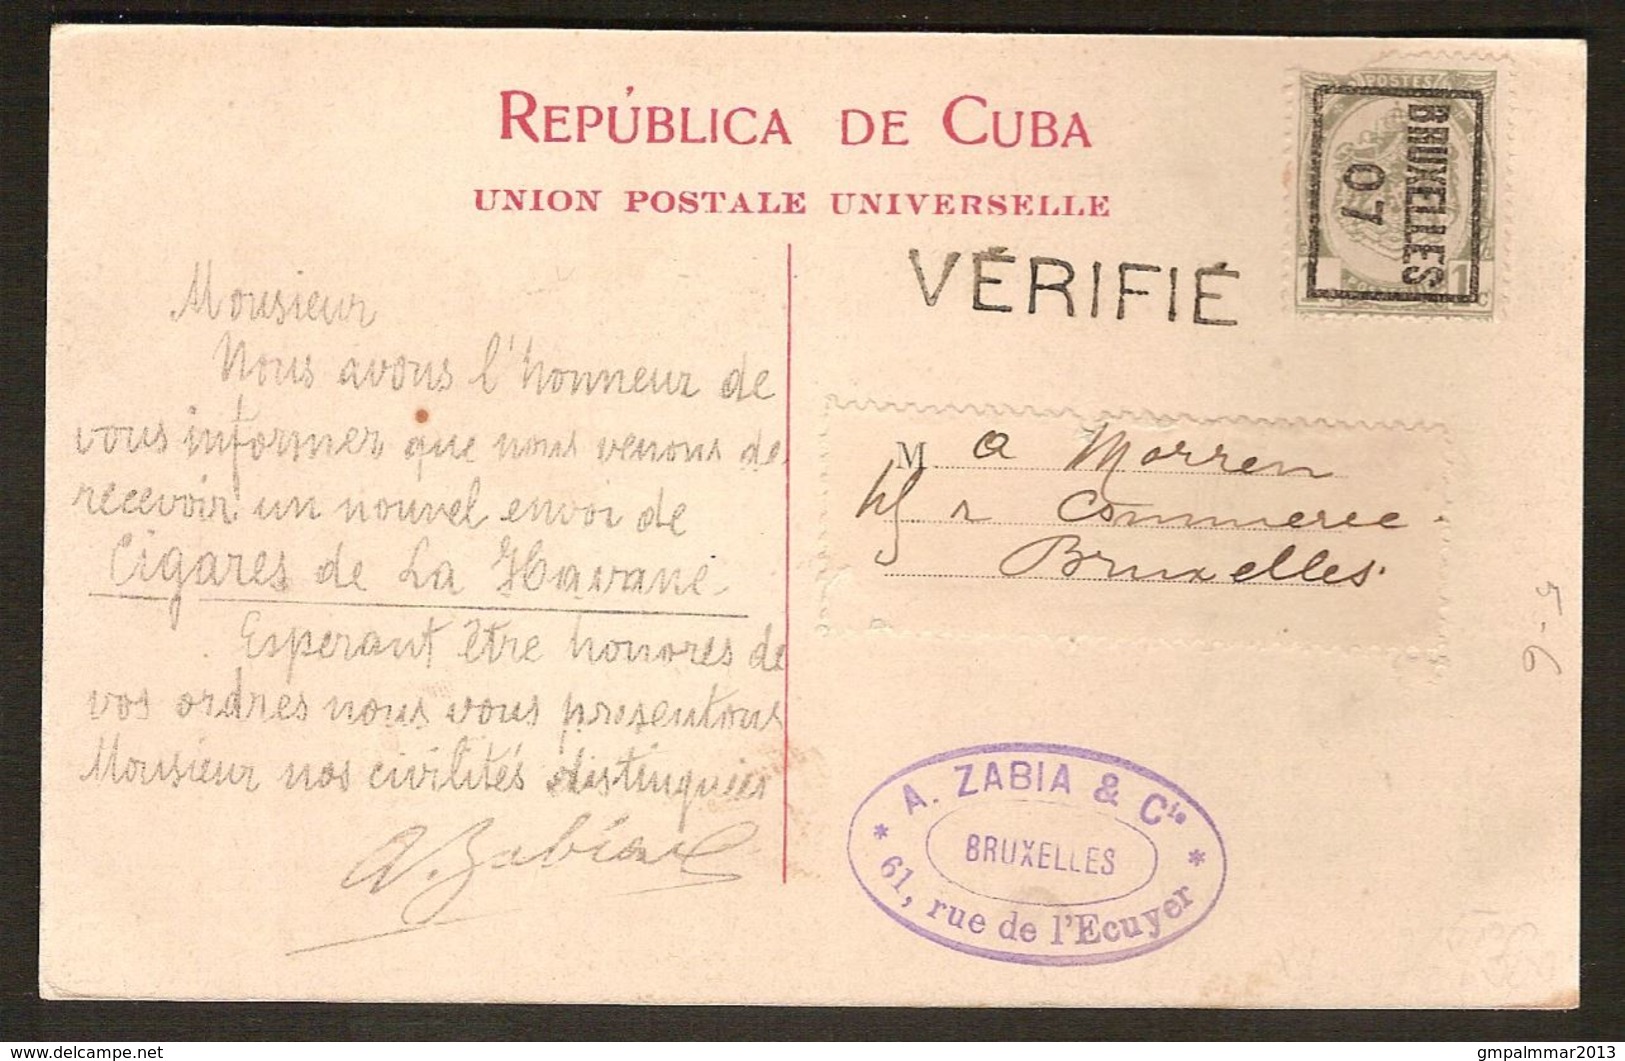 Wapenschild Nr. 81A TYPO Voorafgestempeld Nr. 5 Op Postkaart LA HAVANE CUBA + GRIFFE VERIFIE ; Staat Zie 2 Scans ! - Typos 1906-12 (Armoiries)